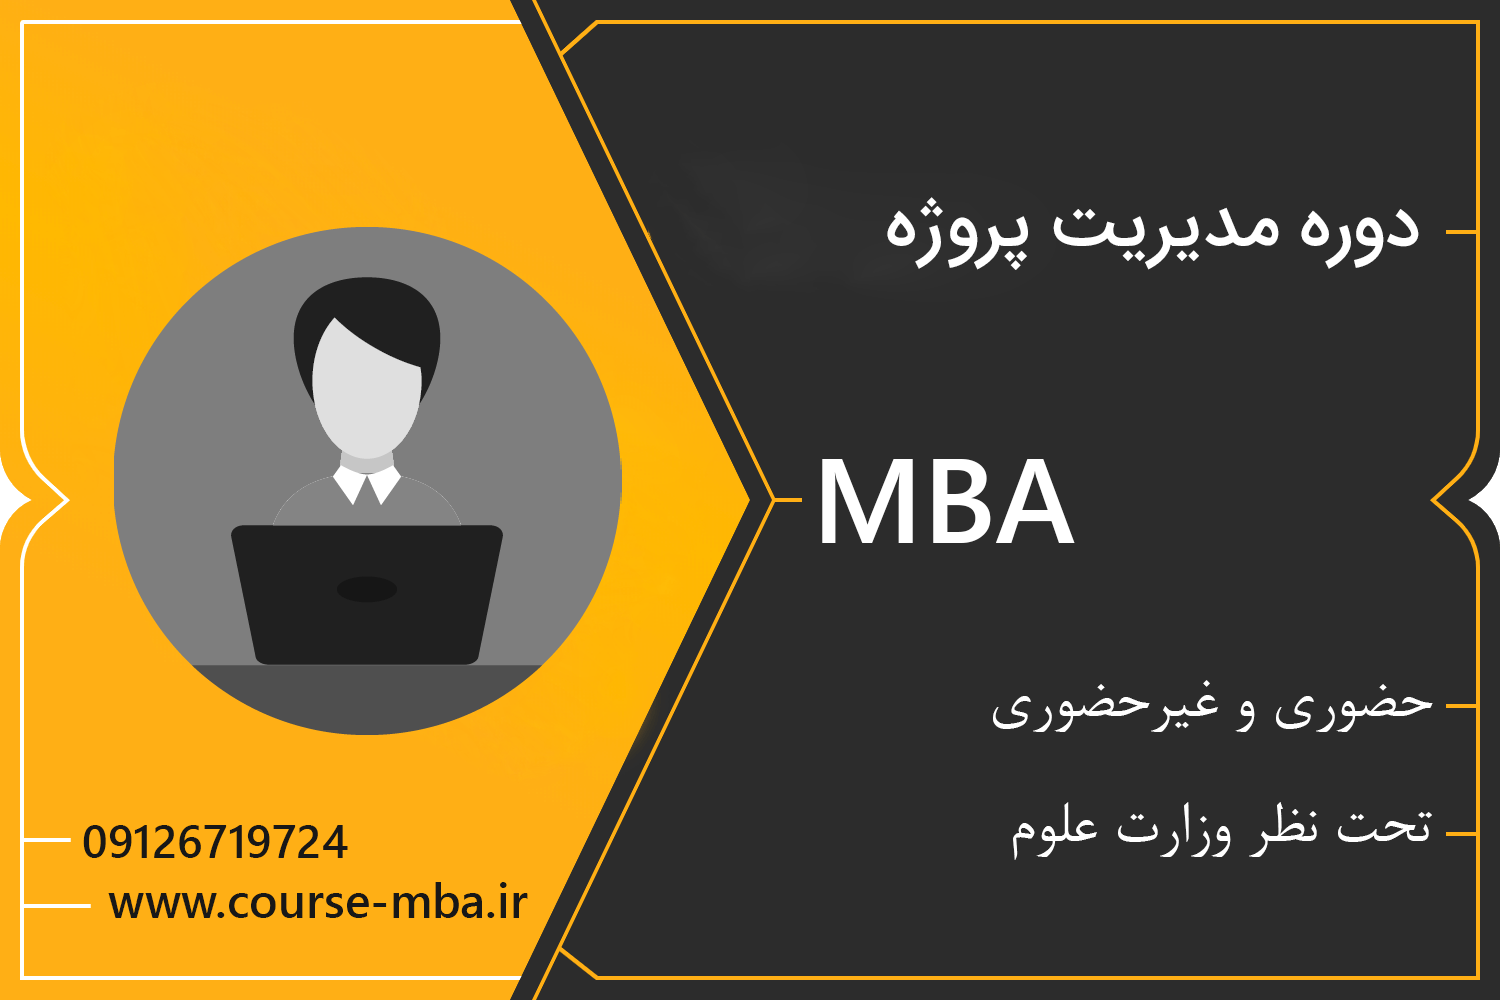 دوره MBA مدیریت پروژه | دوره مدیریت پروژه